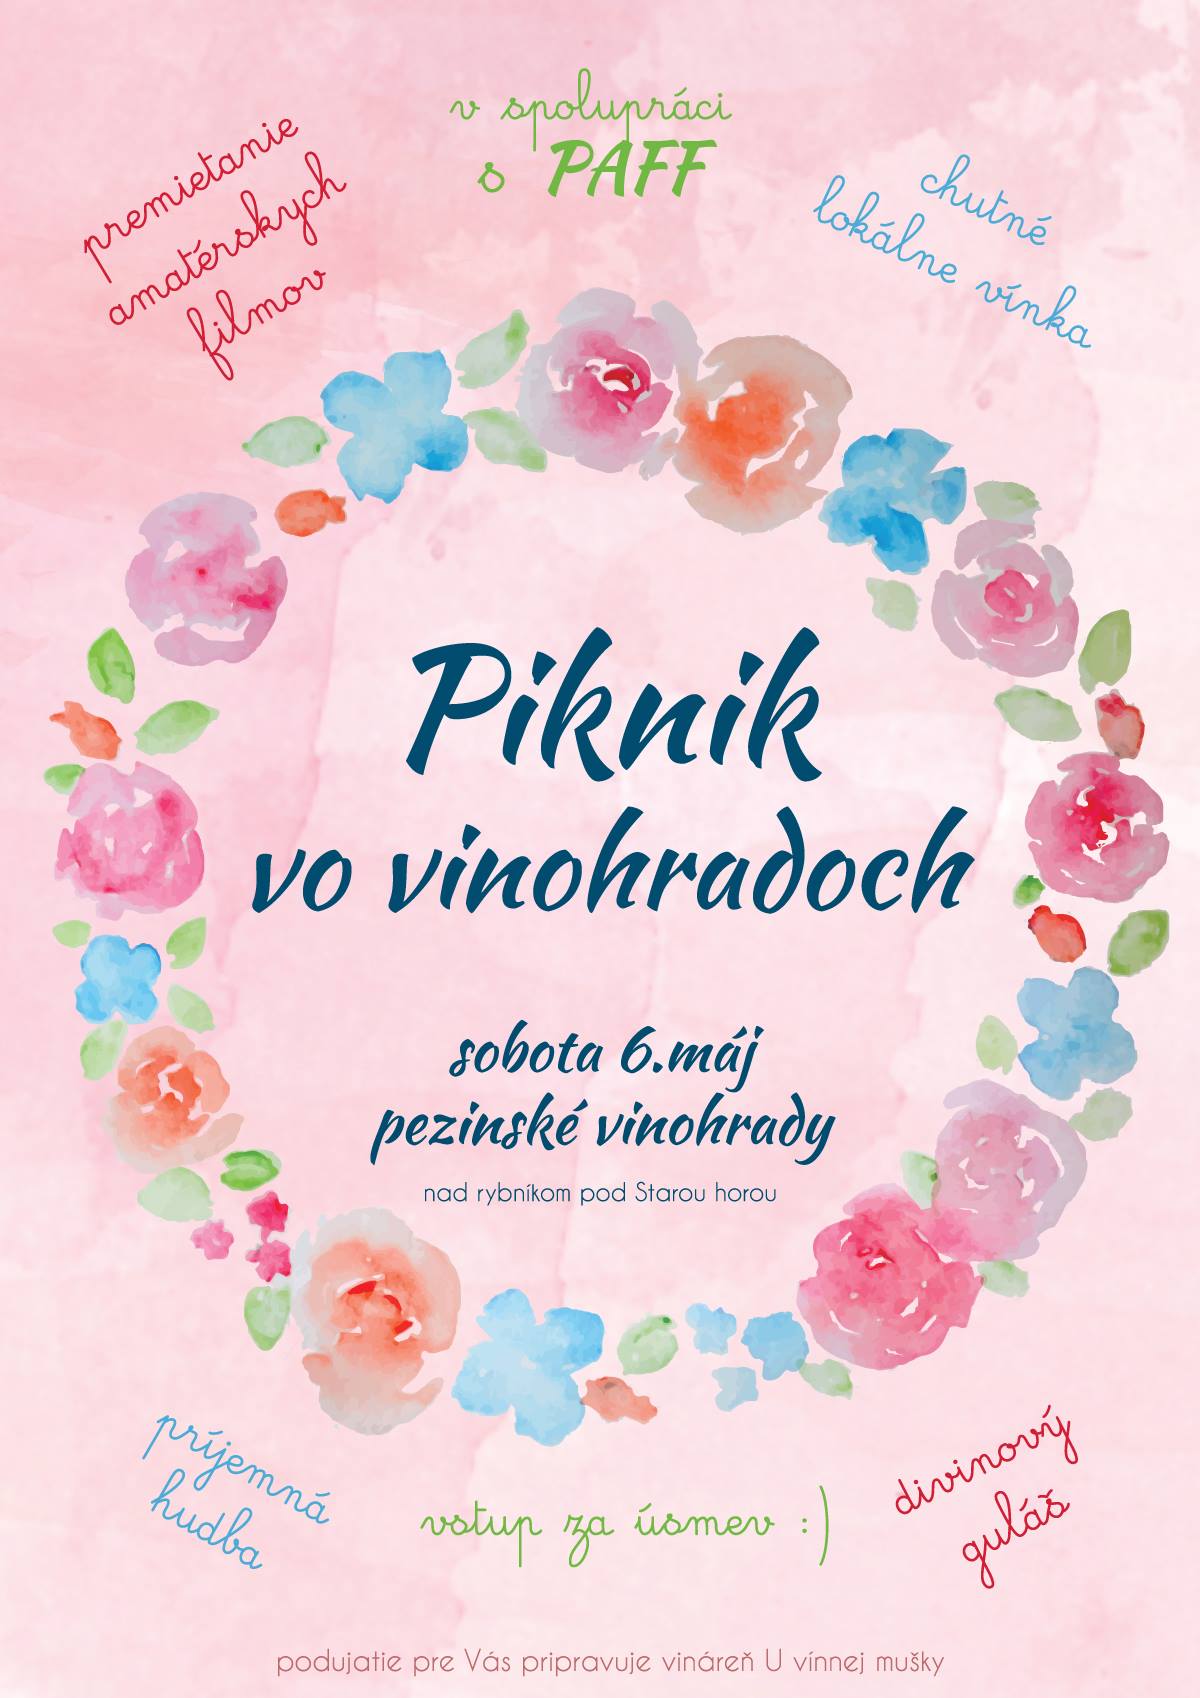 Karpatská muška: Piknik vo vinohradoch 2017